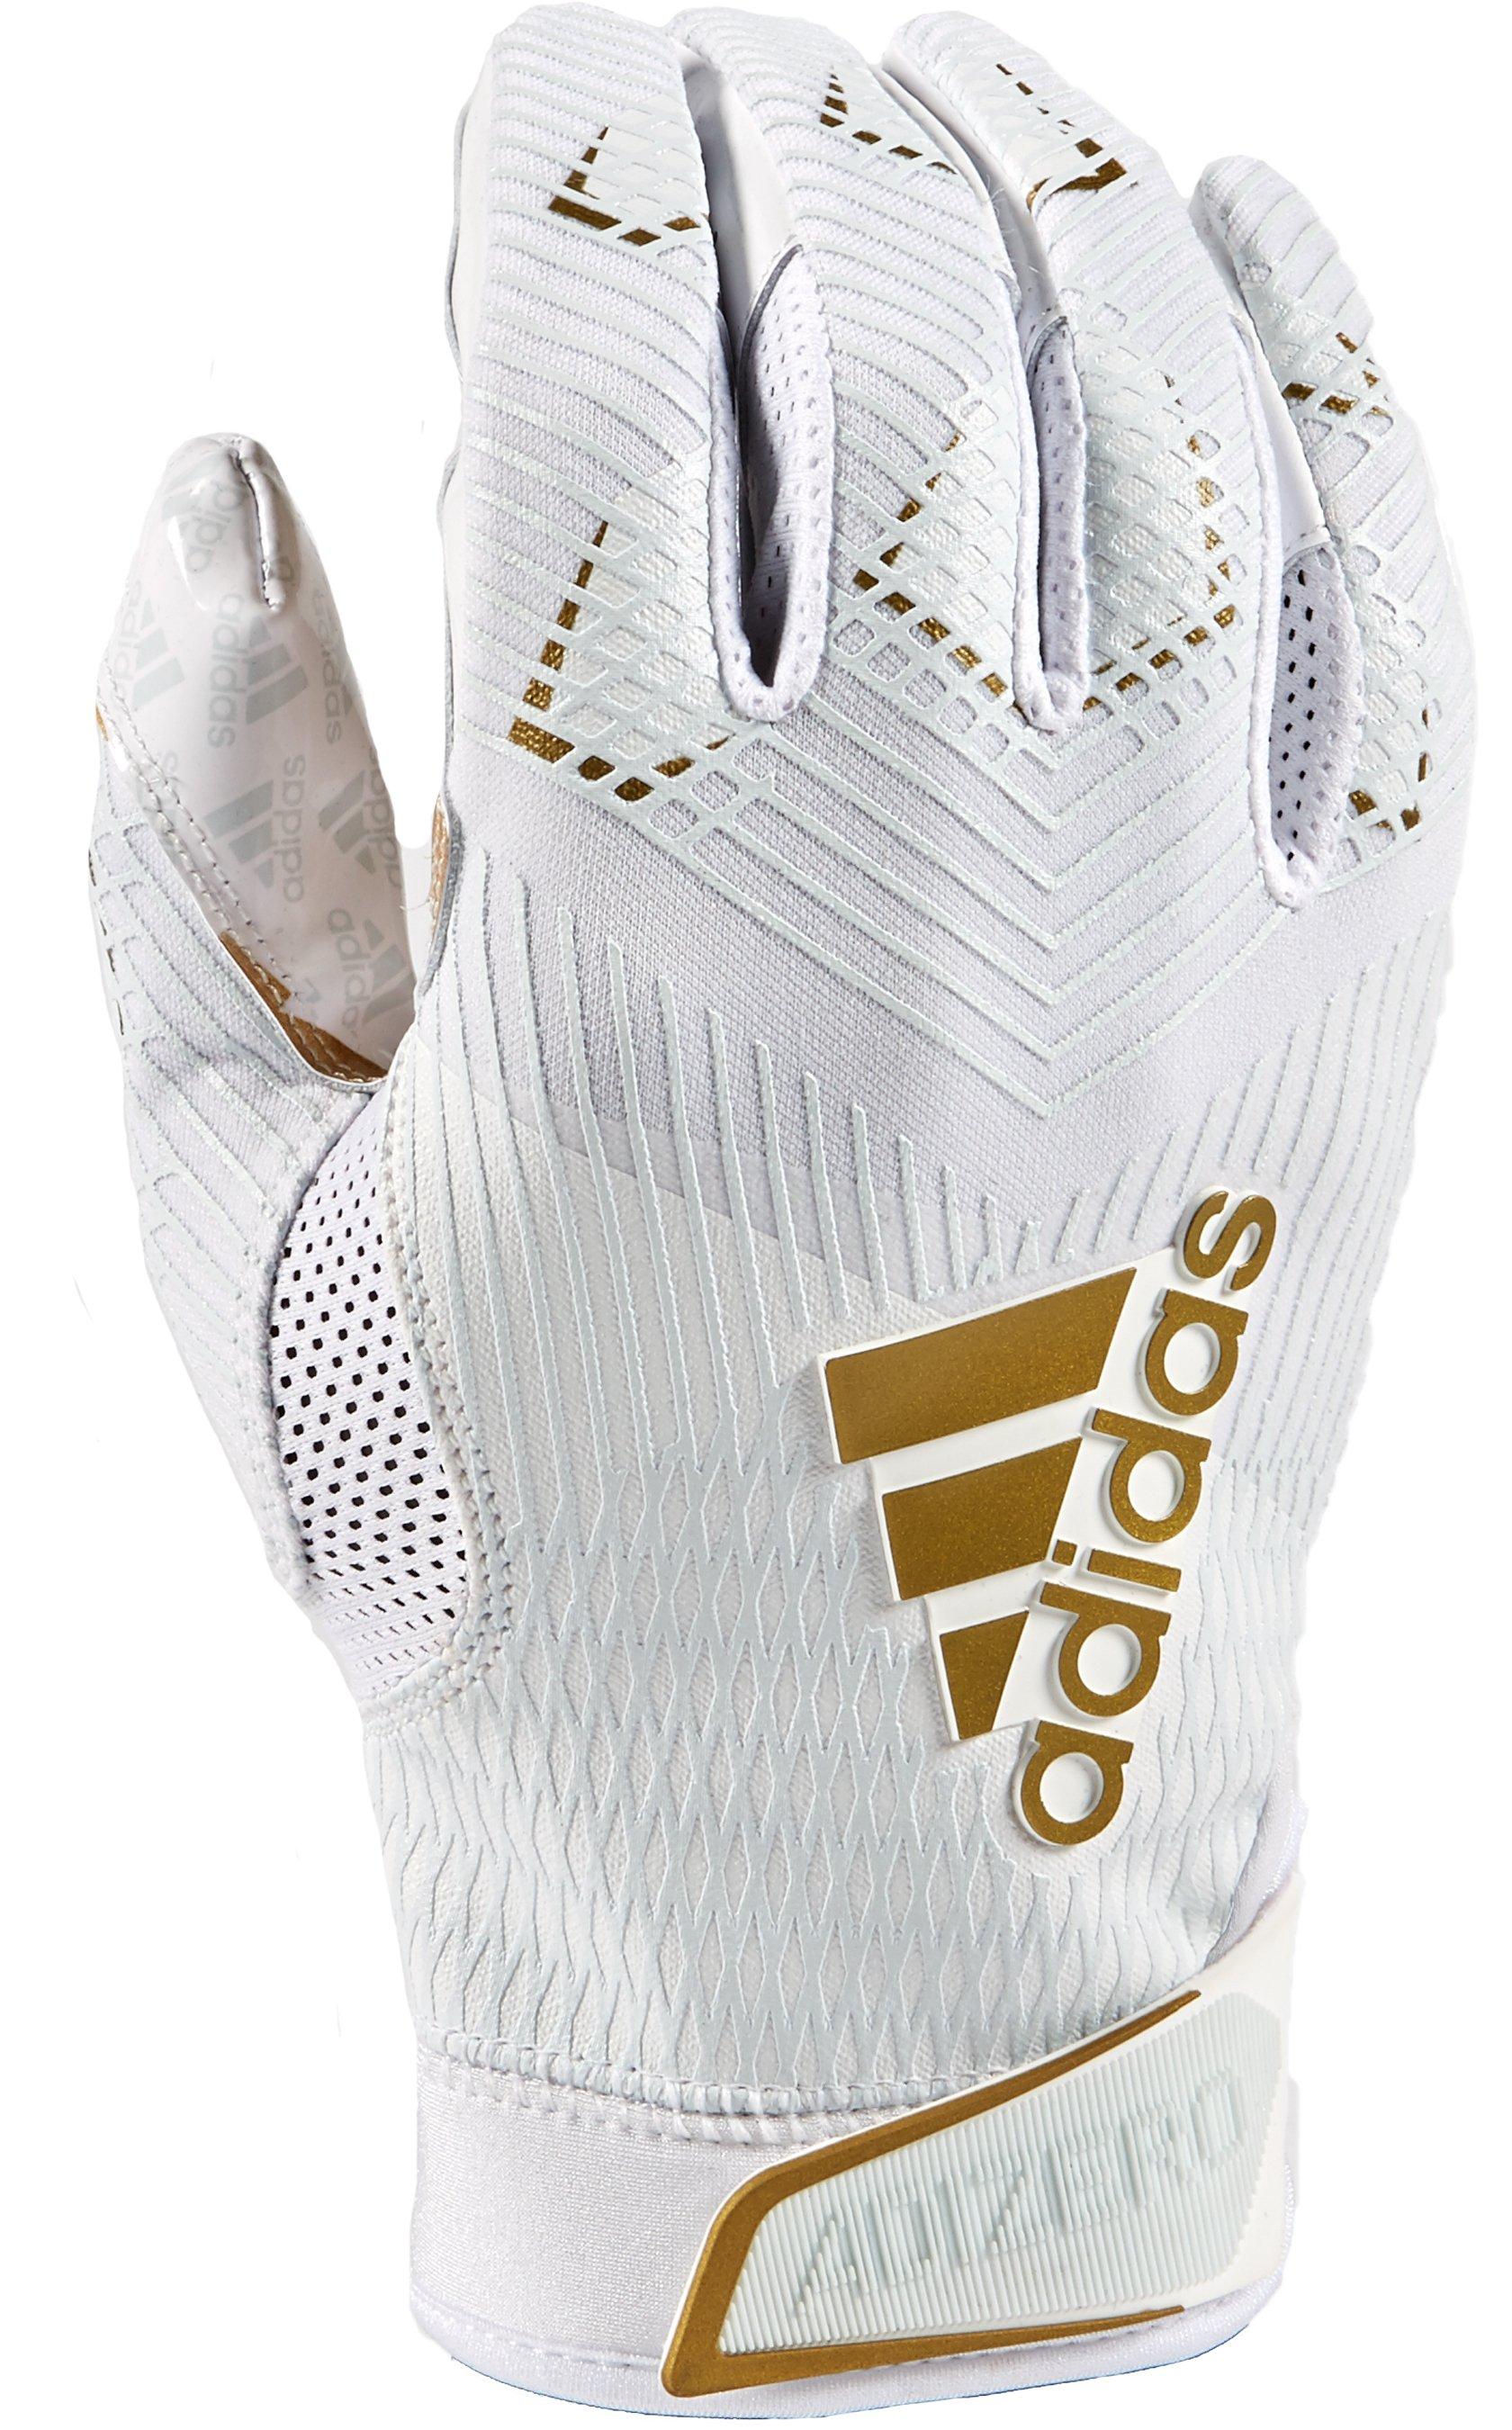 adizero 8.0 football gloves